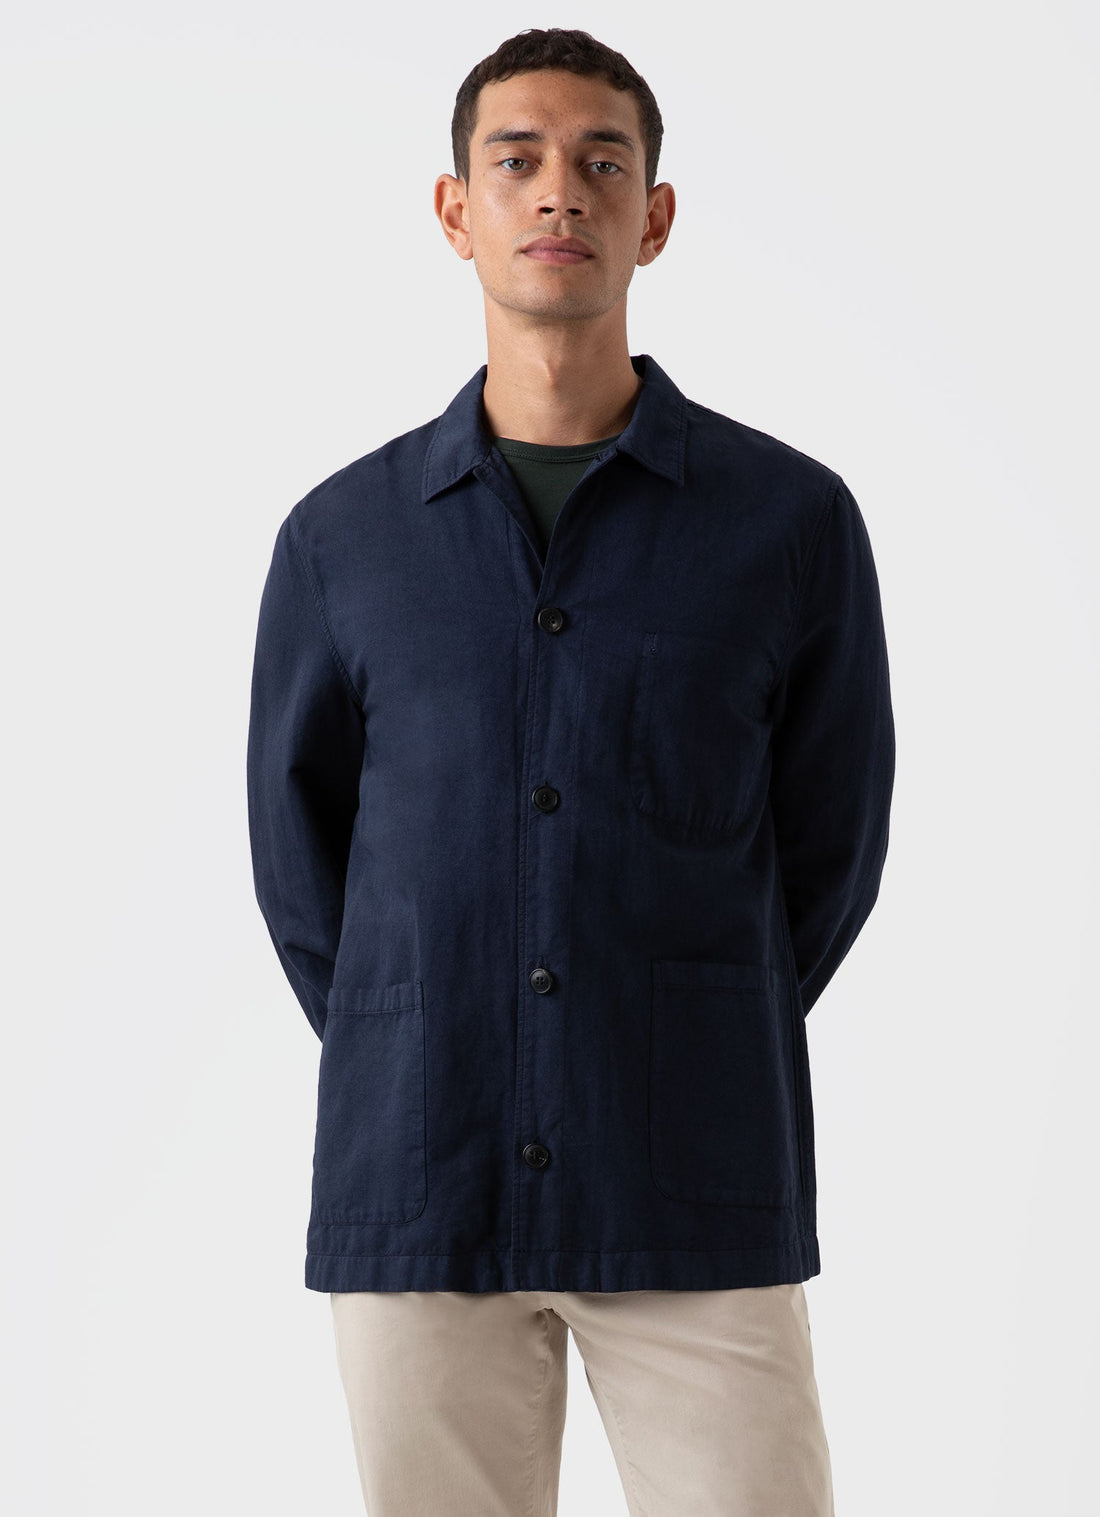 Men's Cotton Linen Twin Pocket Jacket in Navy